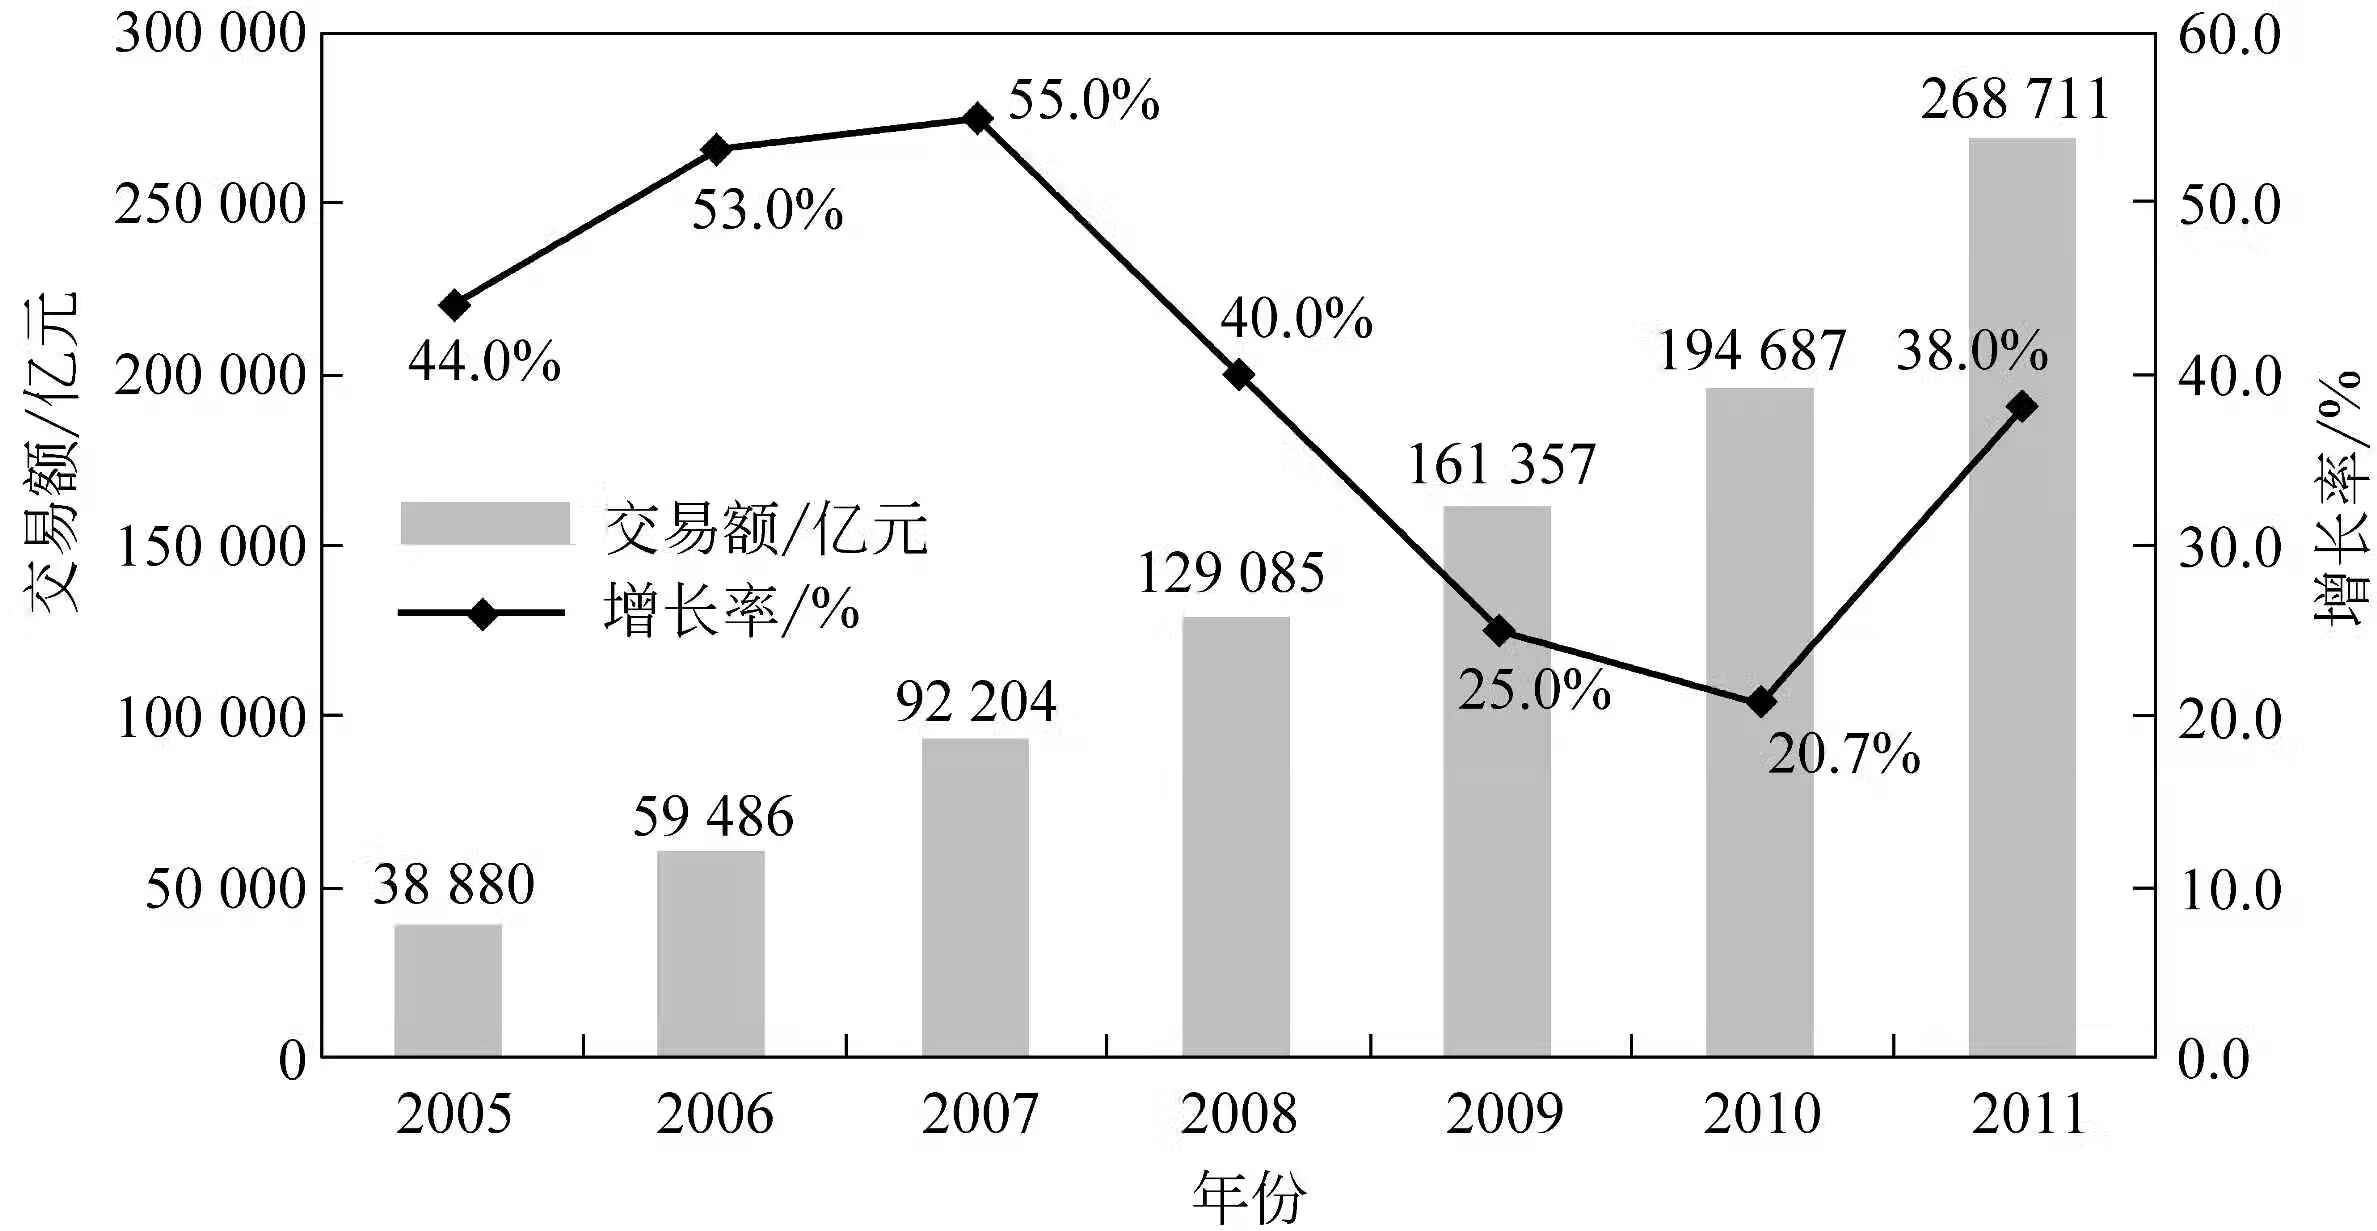 中国电子商务报告（2010-2011年）pdf/doc/txt格式电子书下载